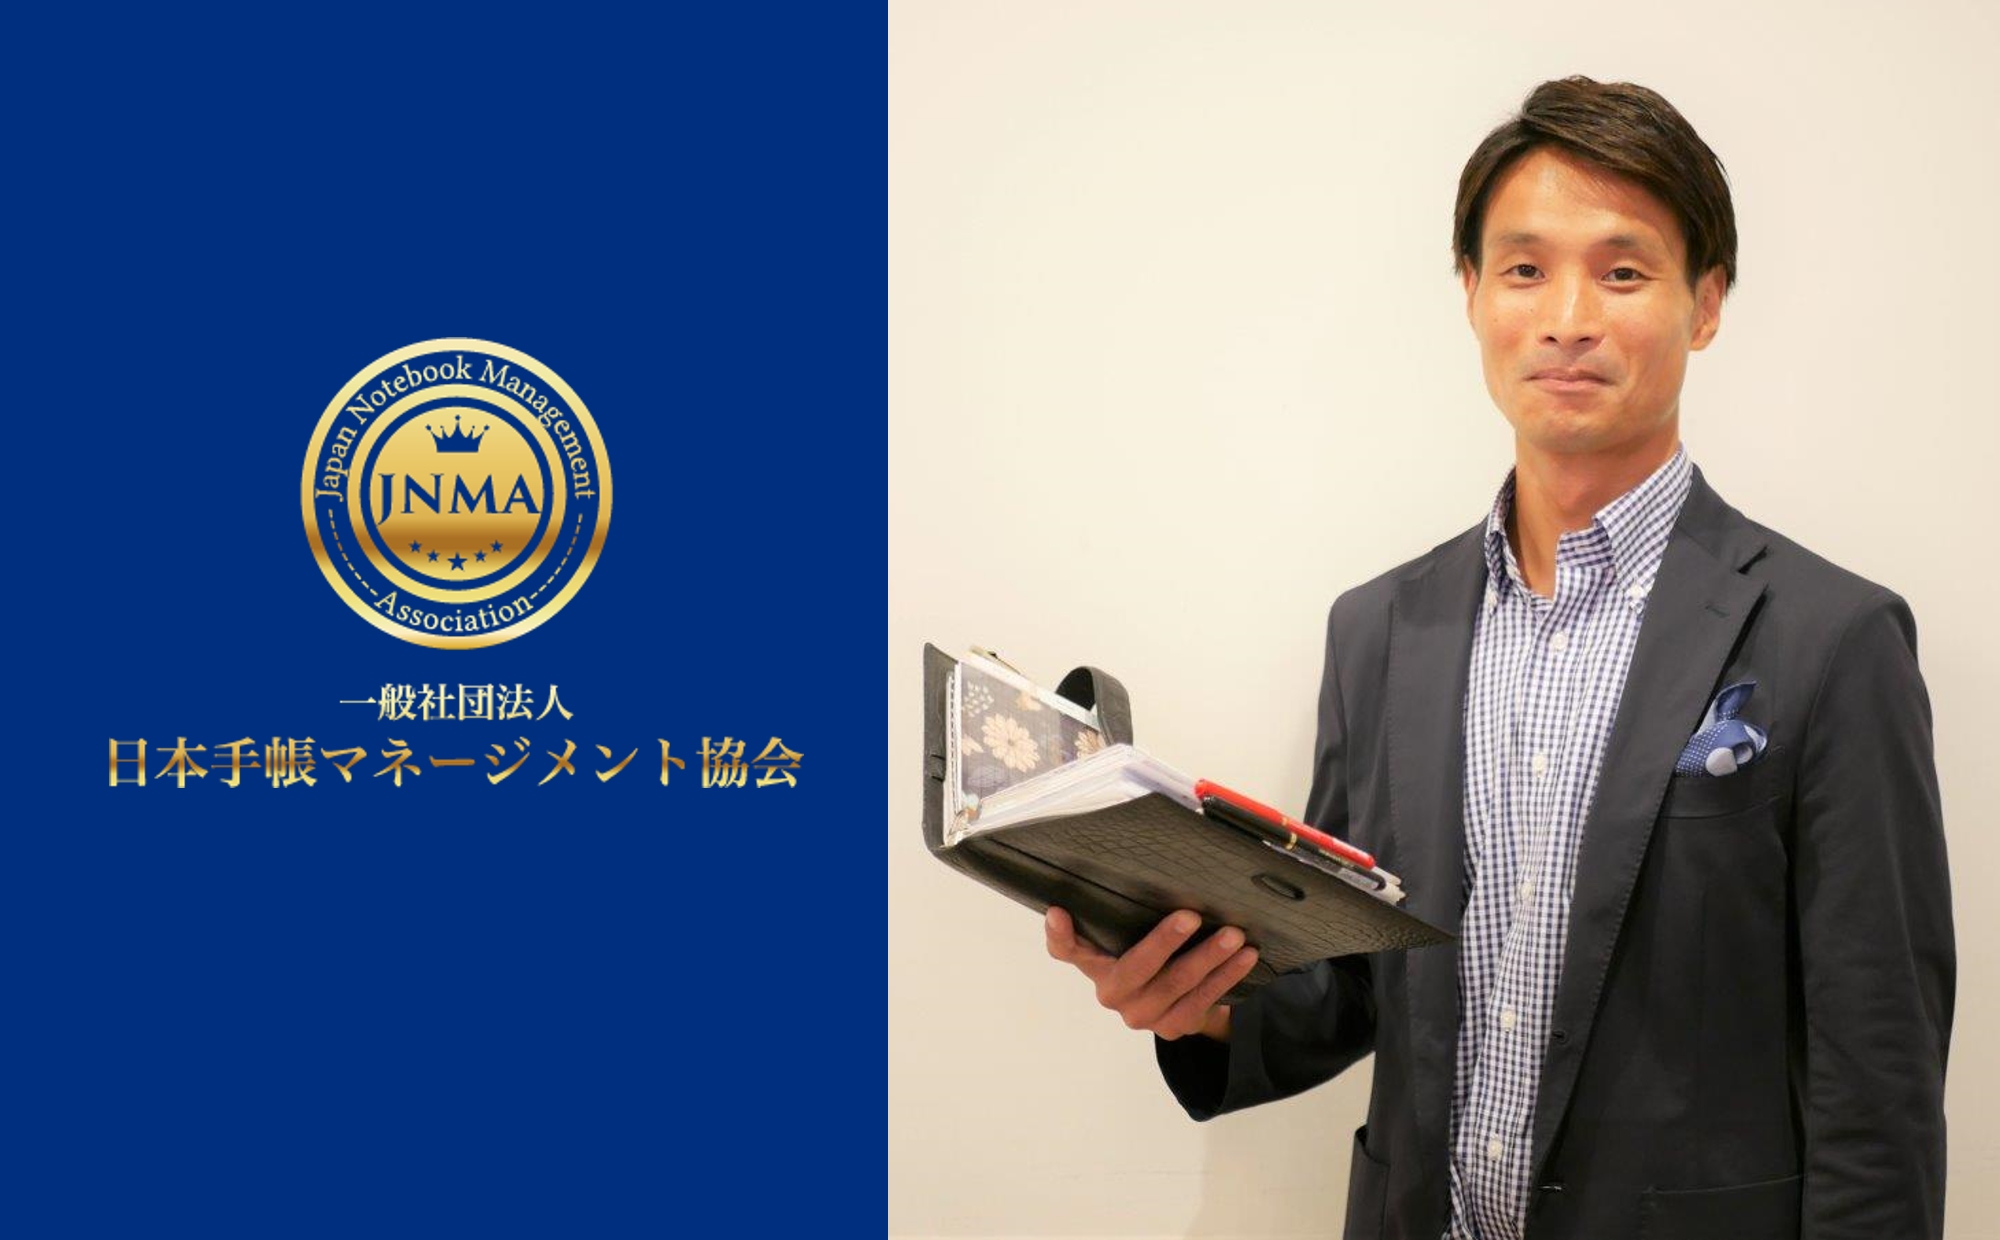 手帳術の普及を目指し『日本手帳マネージメント協会』を設立しました